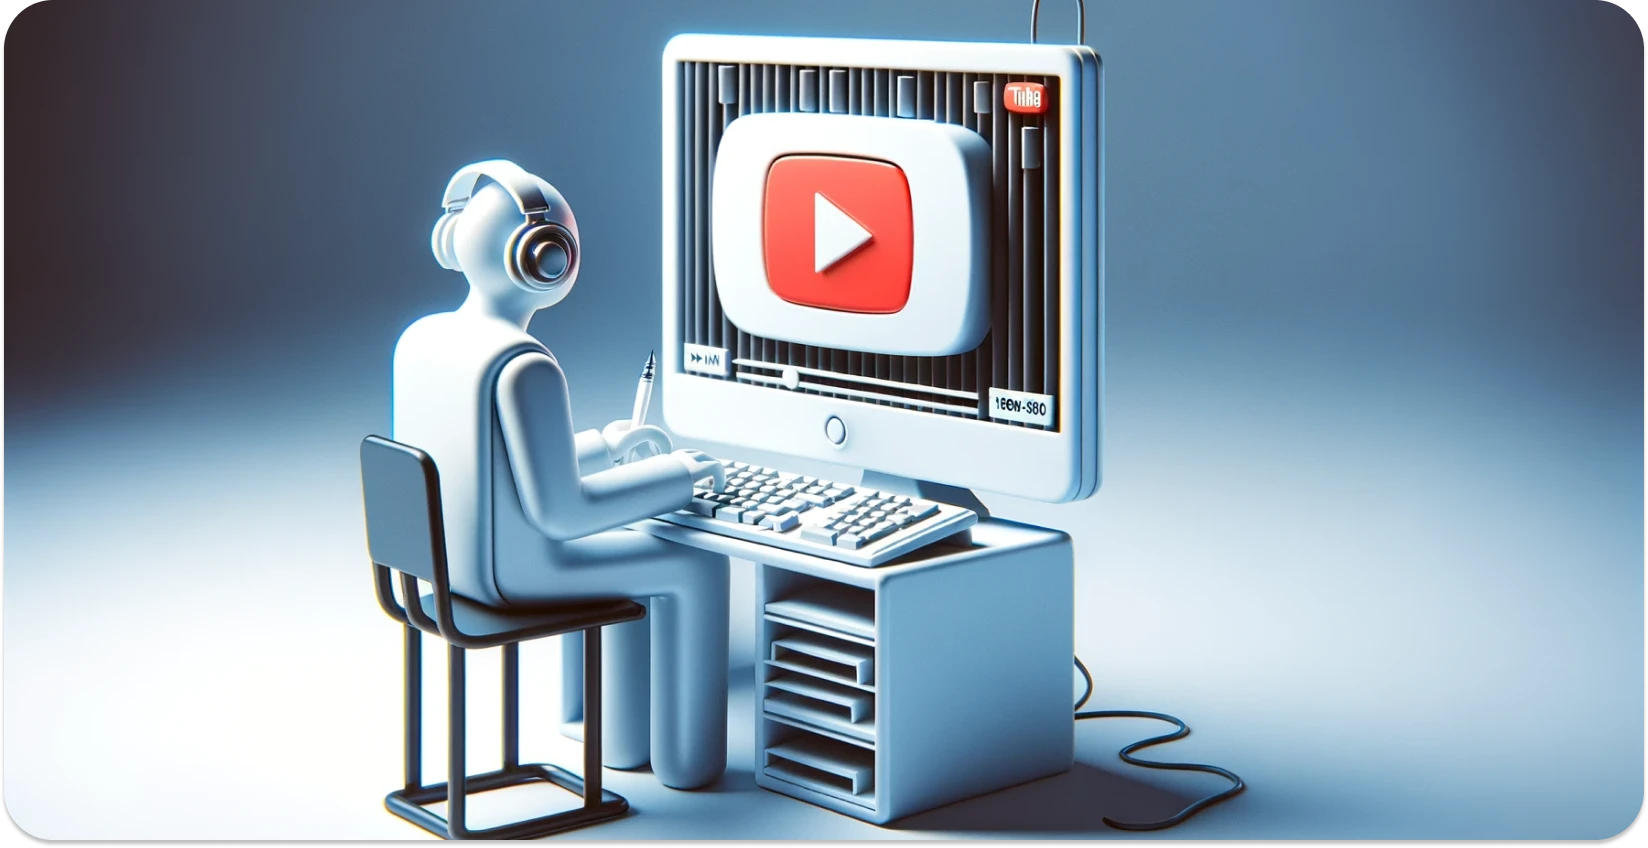 Stilizált illusztráció egy személyről, aki számítógépet használ a YouTube felülettel, a transzkripcióra összpontosítva.